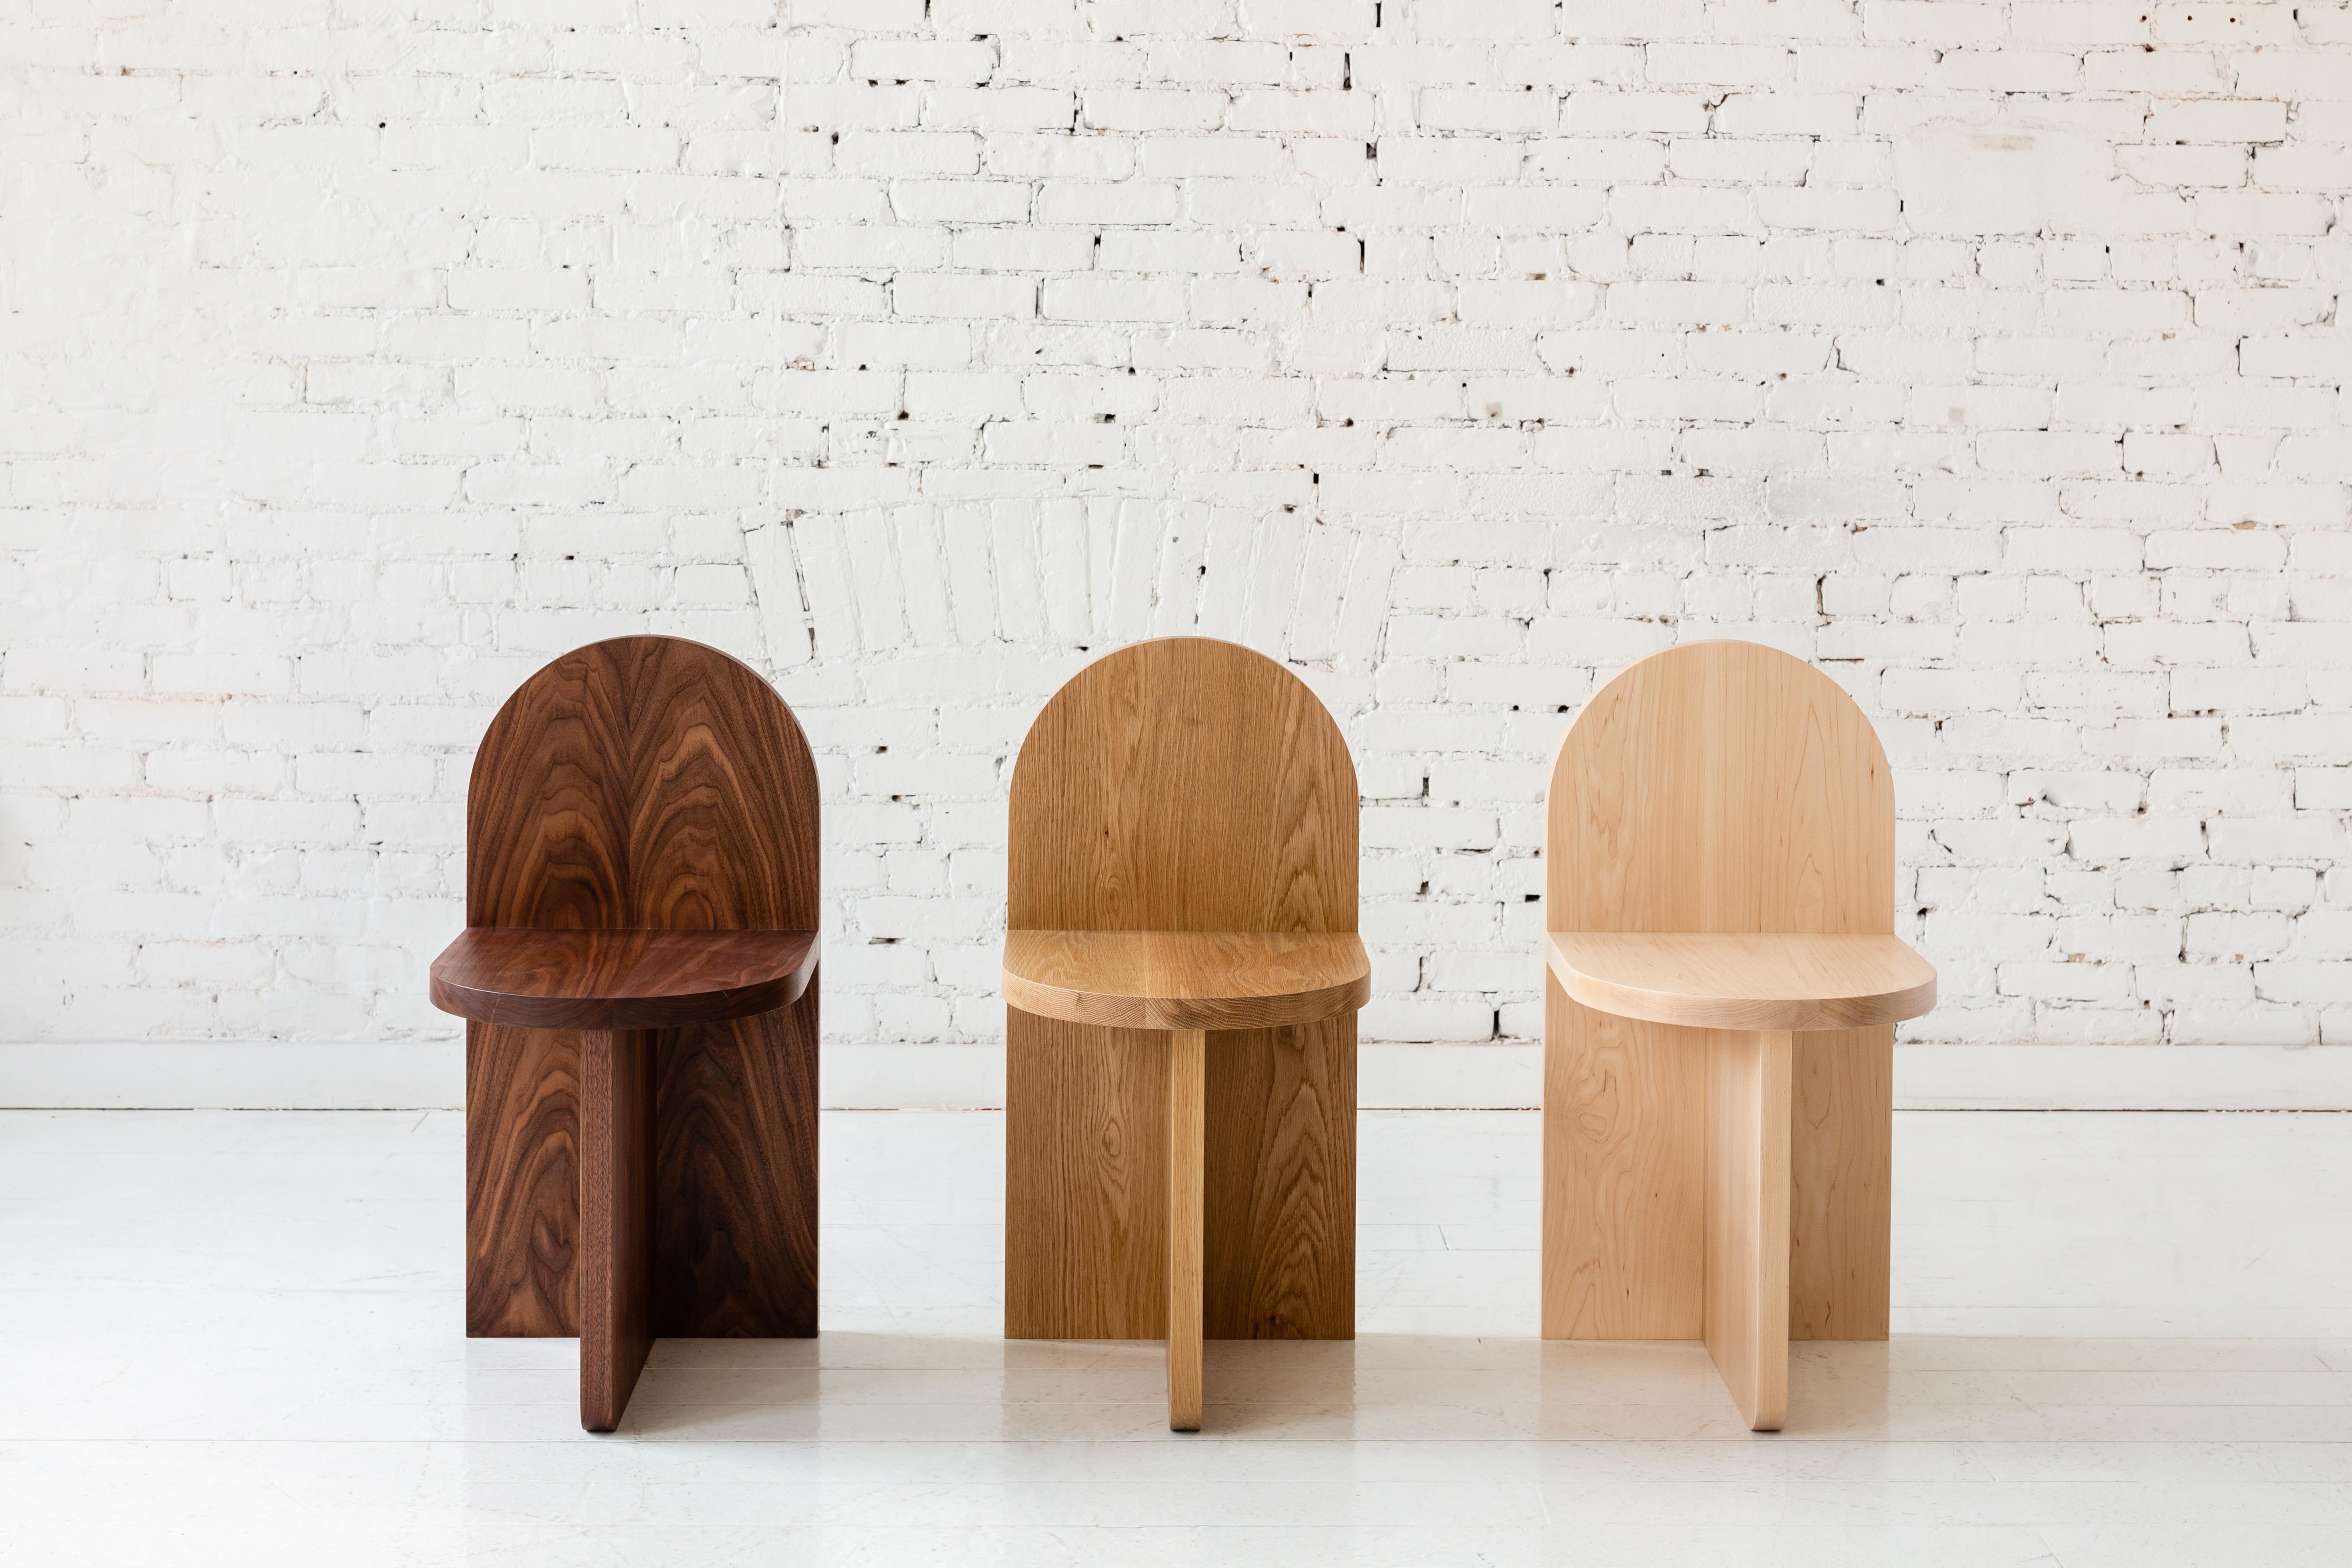 Dieser minimalistische Stuhl besteht aus drei sich überschneidenden Ebenen, wobei die Rückenlehne an die Form eines traditionellen Grabsteins erinnert. 

Erhältlich in einer Vielzahl von Holzarten. Abgebildet in Nussbaum, Weißeiche und Esche. Auch